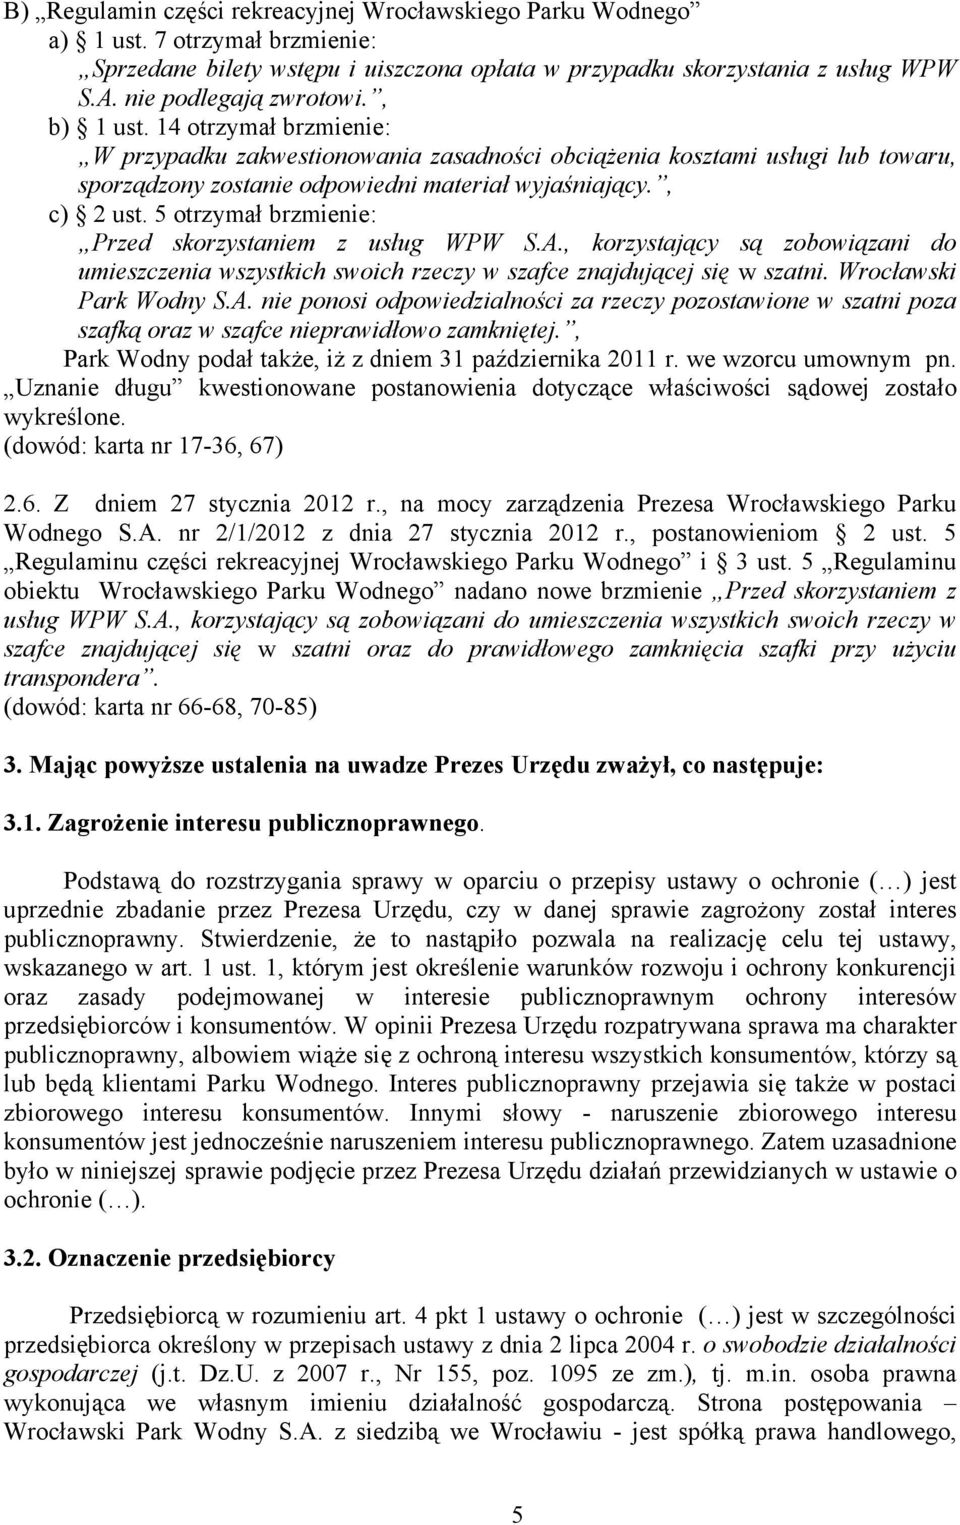 , c) 2 ust. 5 otrzymał brzmienie: Przed skorzystaniem z usług WPW S.A., korzystający są zobowiązani do umieszczenia wszystkich swoich rzeczy w szafce znajdującej się w szatni. Wrocławski Park Wodny S.